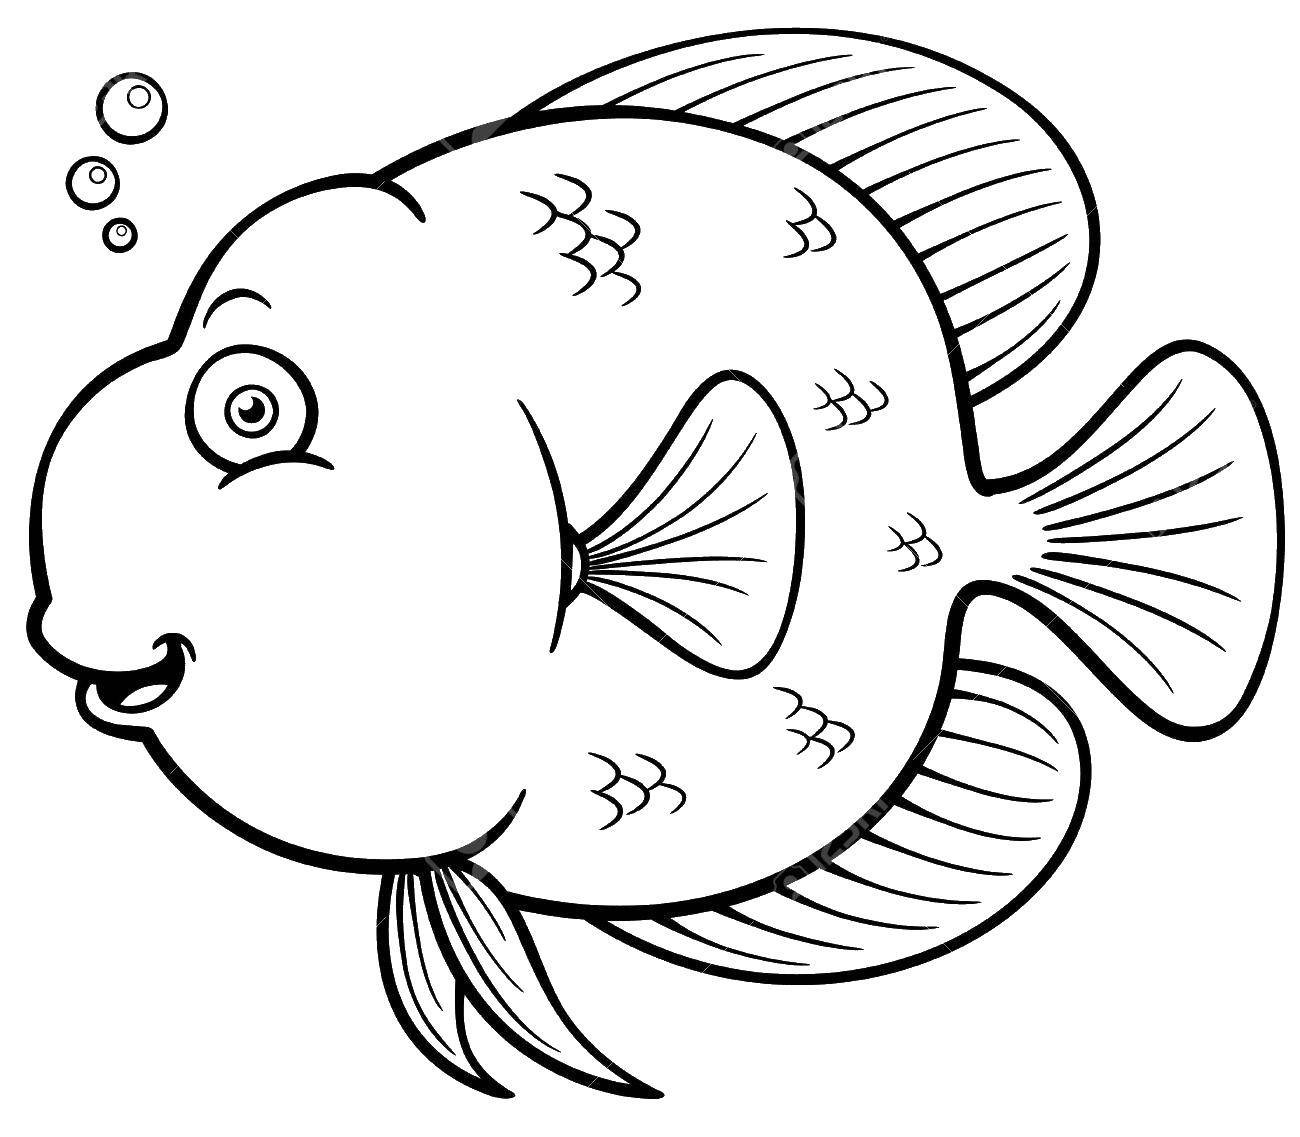 Опис: розмальовки  Пухкенька рибка. Категорія: Риби. Теги:  Підводний світ, риба.